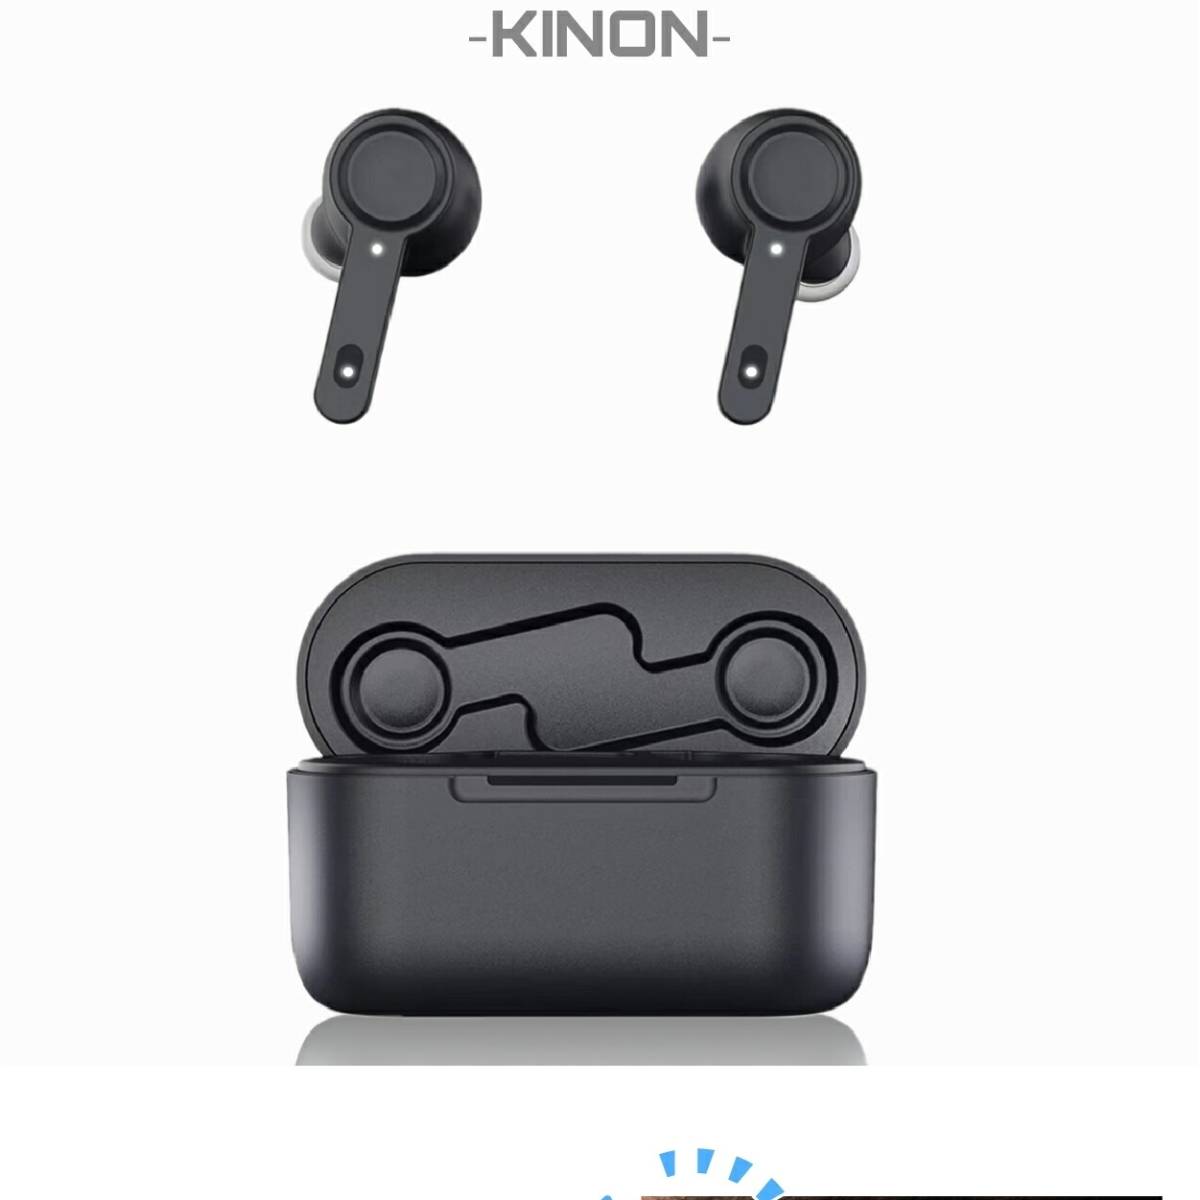 近音 集音器 デジタルイヤホン型 両耳 リモコン付き 軽量 ワイヤレス USB充電式 操作簡単 ブラック アイボリー おしゃれに音をキャッチ_画像9